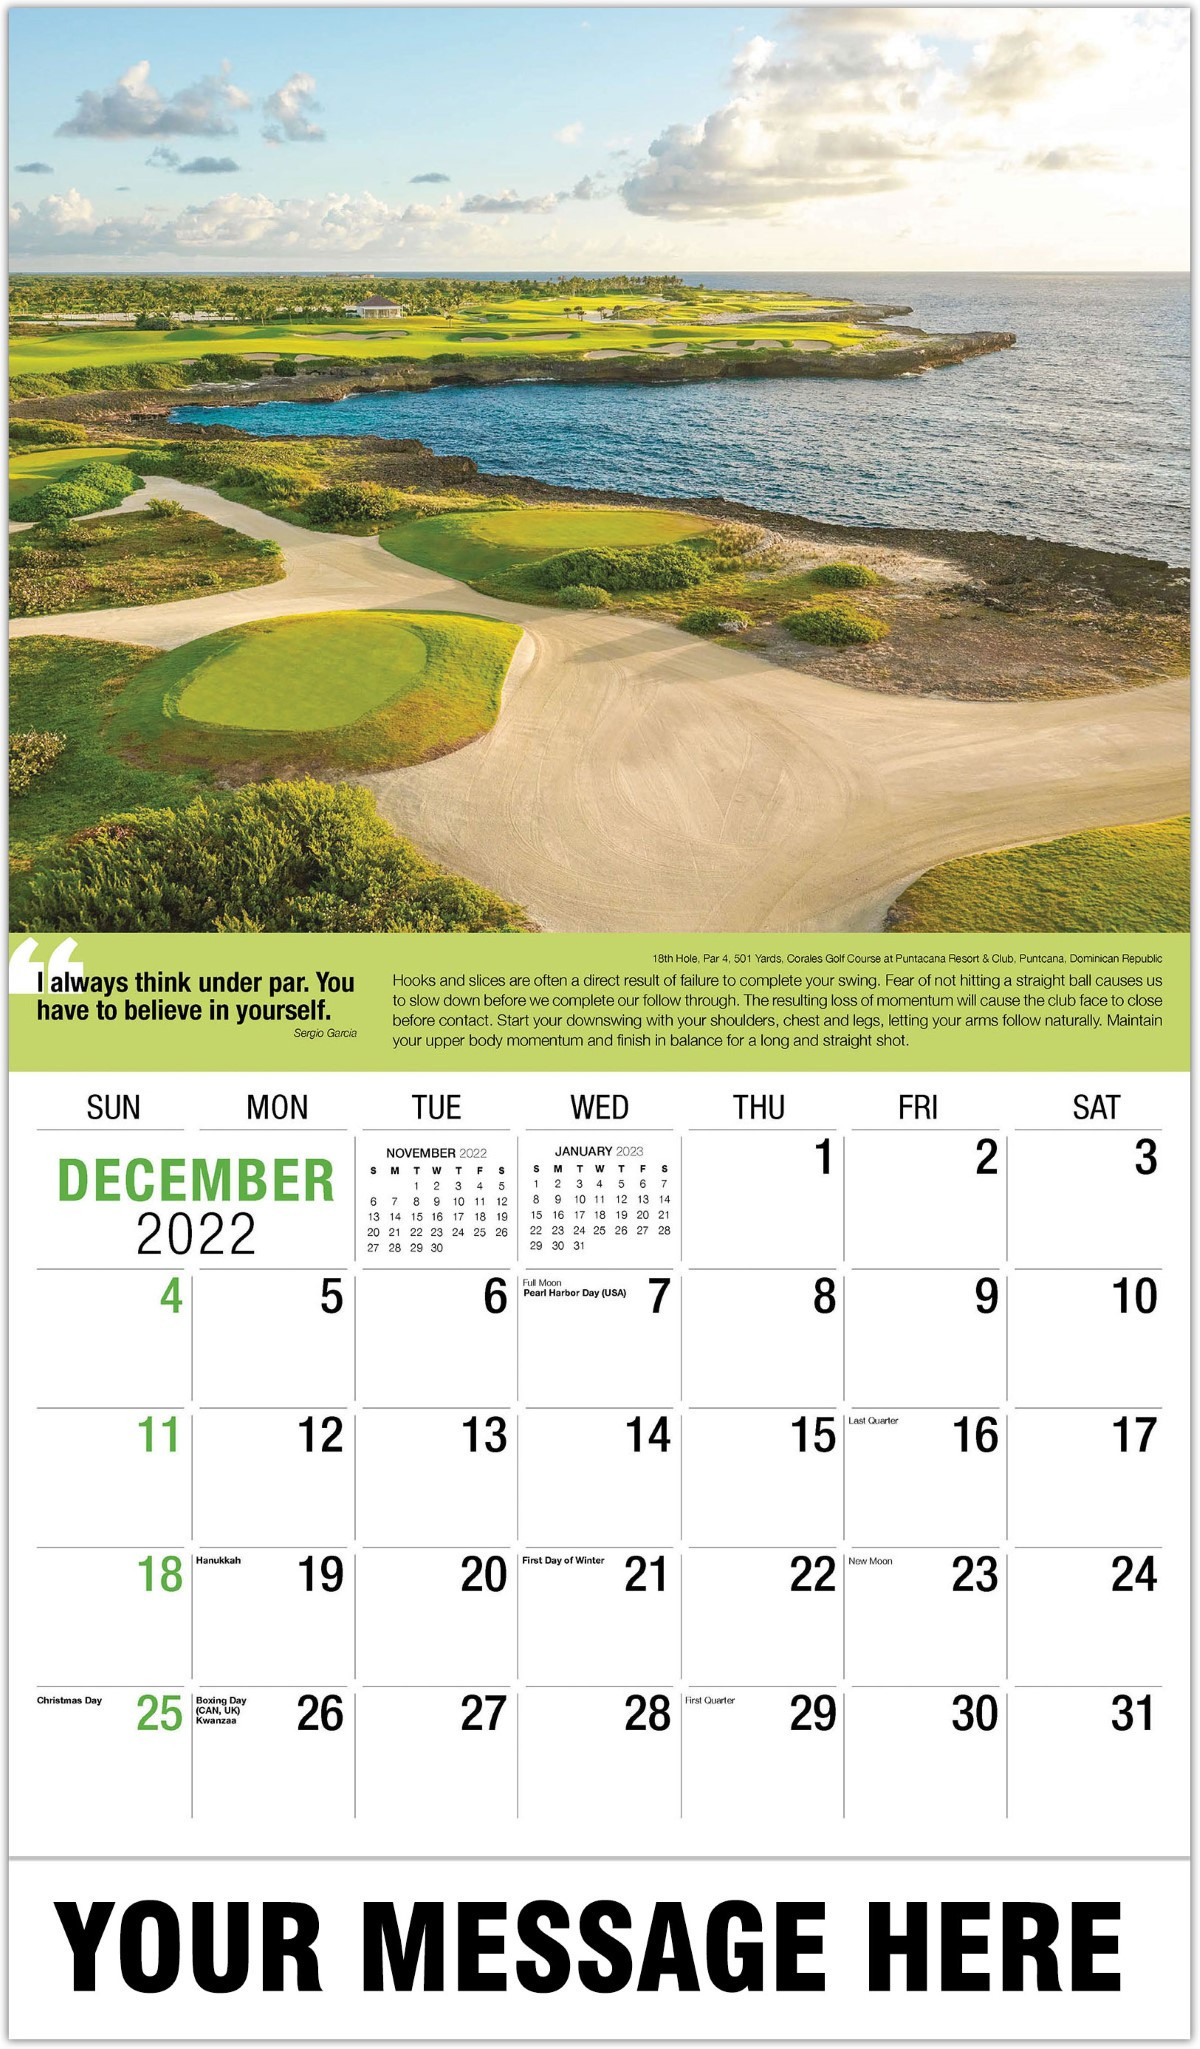 Golf Tips - 2022 Promotional Calendar - Wall Calendars  Light The World 2022 Calendar Zoo